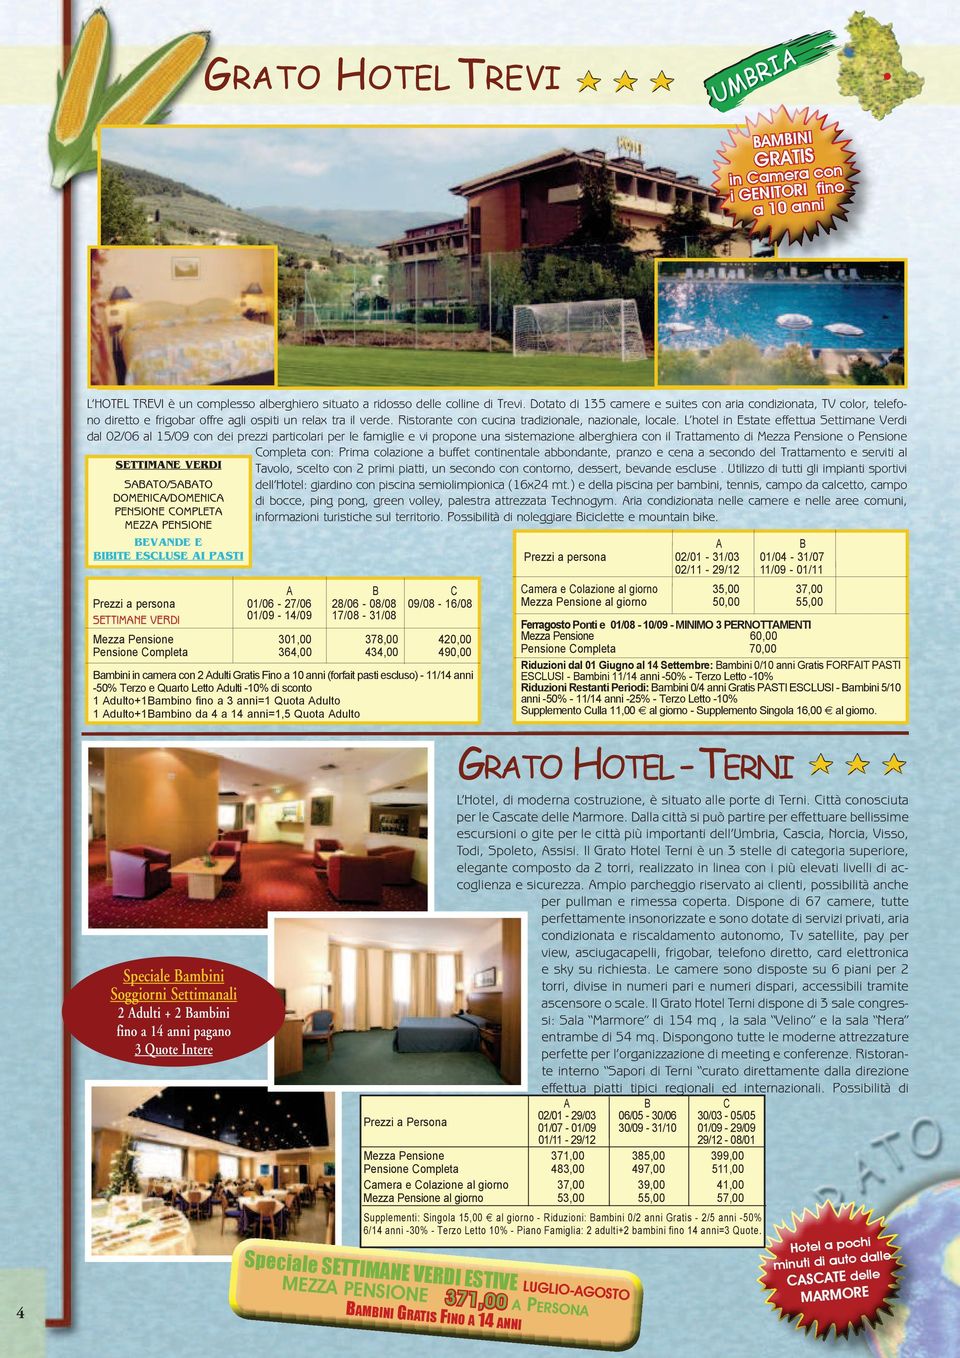 L hotel in Estate effettua Settimane Verdi dal 02/06 al 15/09 con dei prezzi particolari per le famiglie e vi propone una sistemazione alberghiera con il Trattamento di Mezza Pensione o Pensione